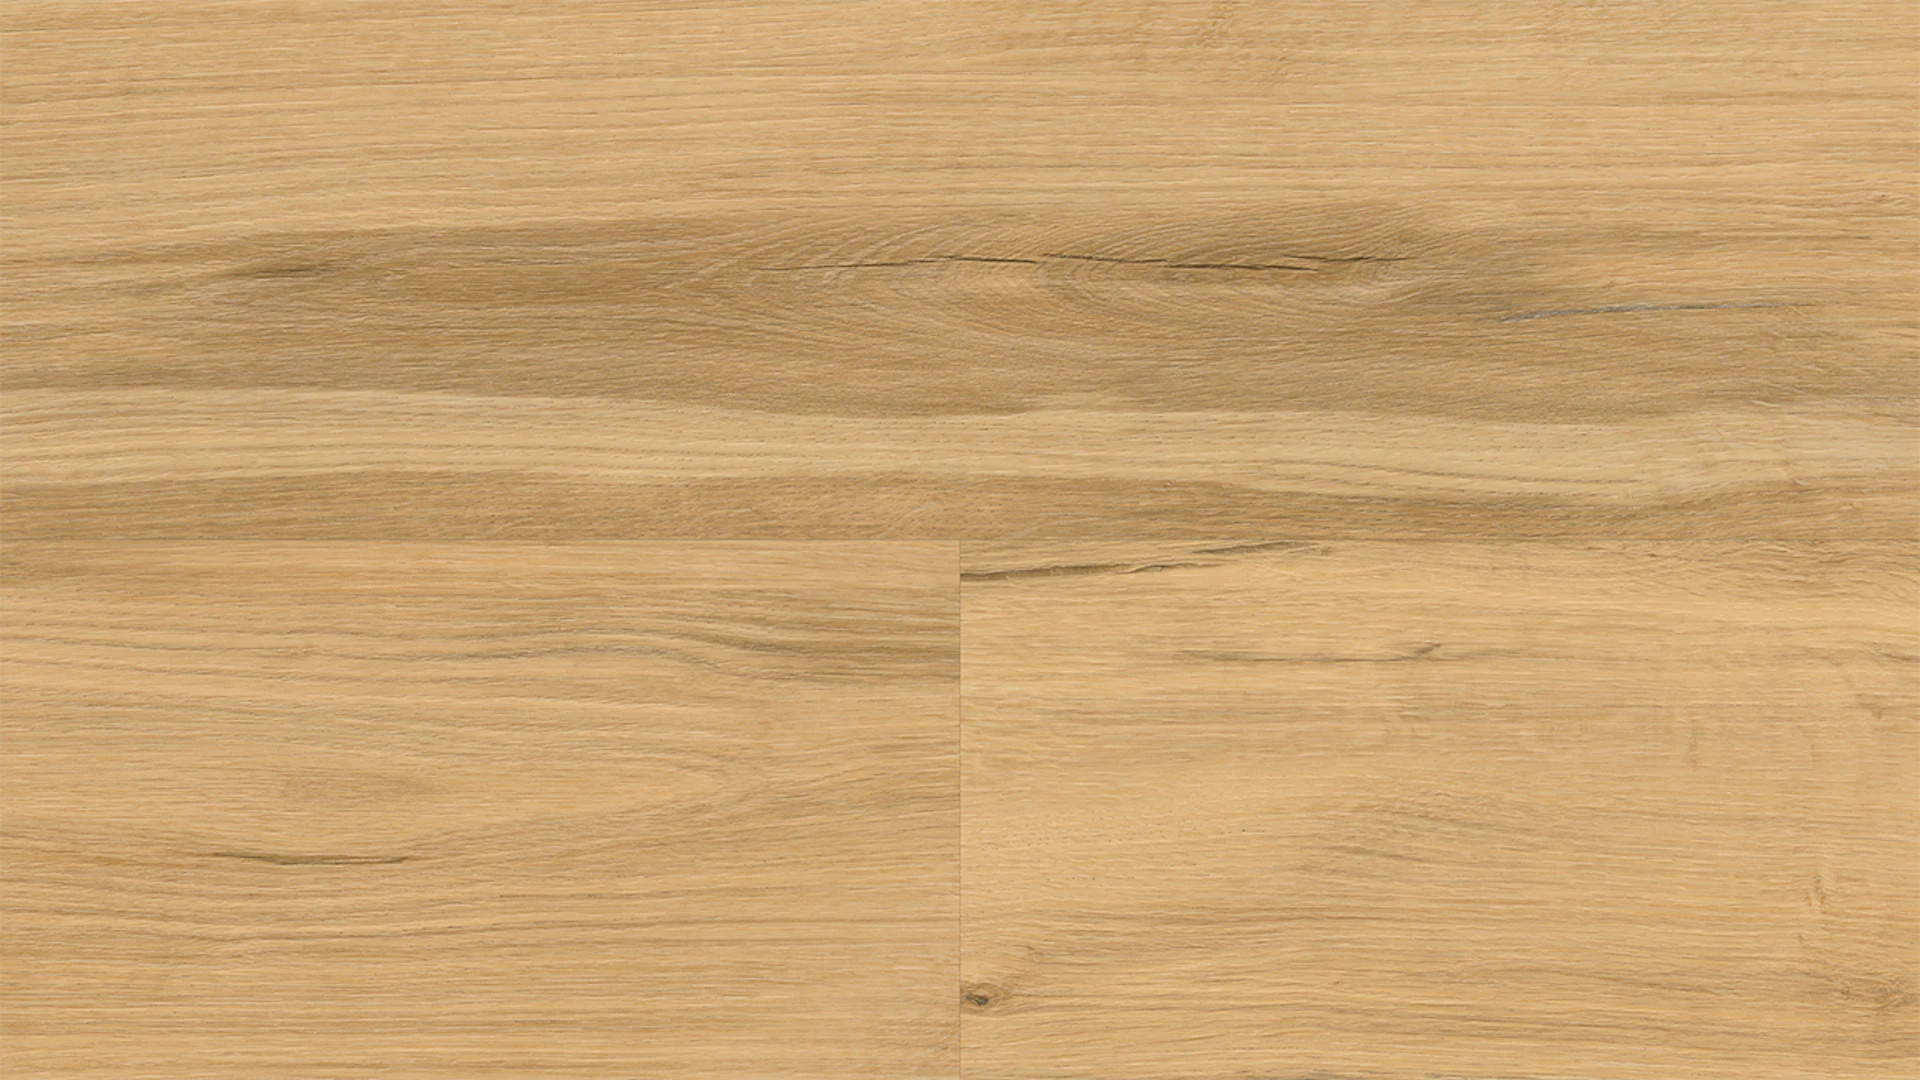 Wineo Klebevinyl - 400 wood XL Shadow Oak Nature | Synchronprägung (DB292WXL)